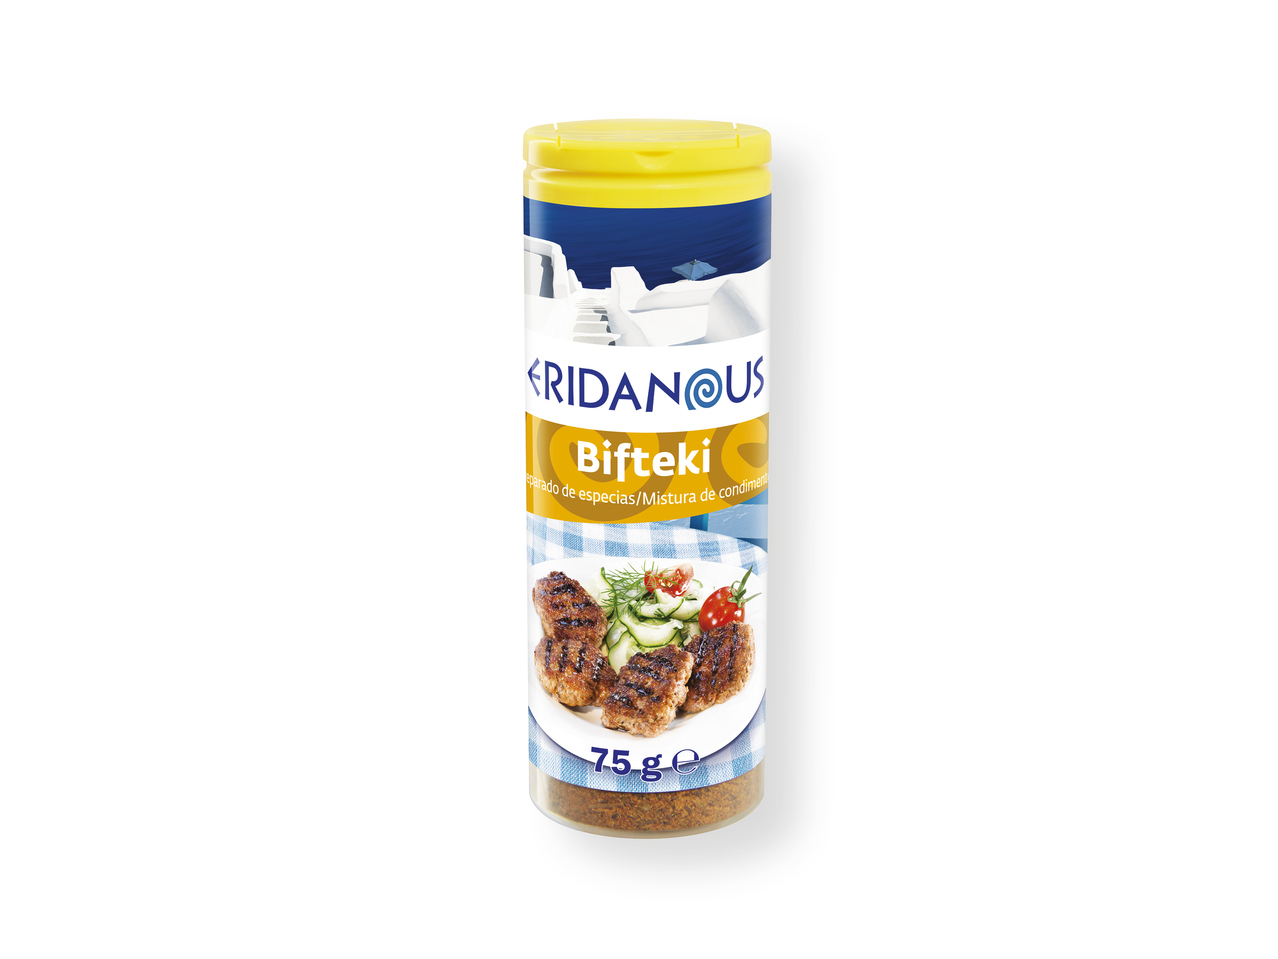 "Eridanous" Condimentos griegos